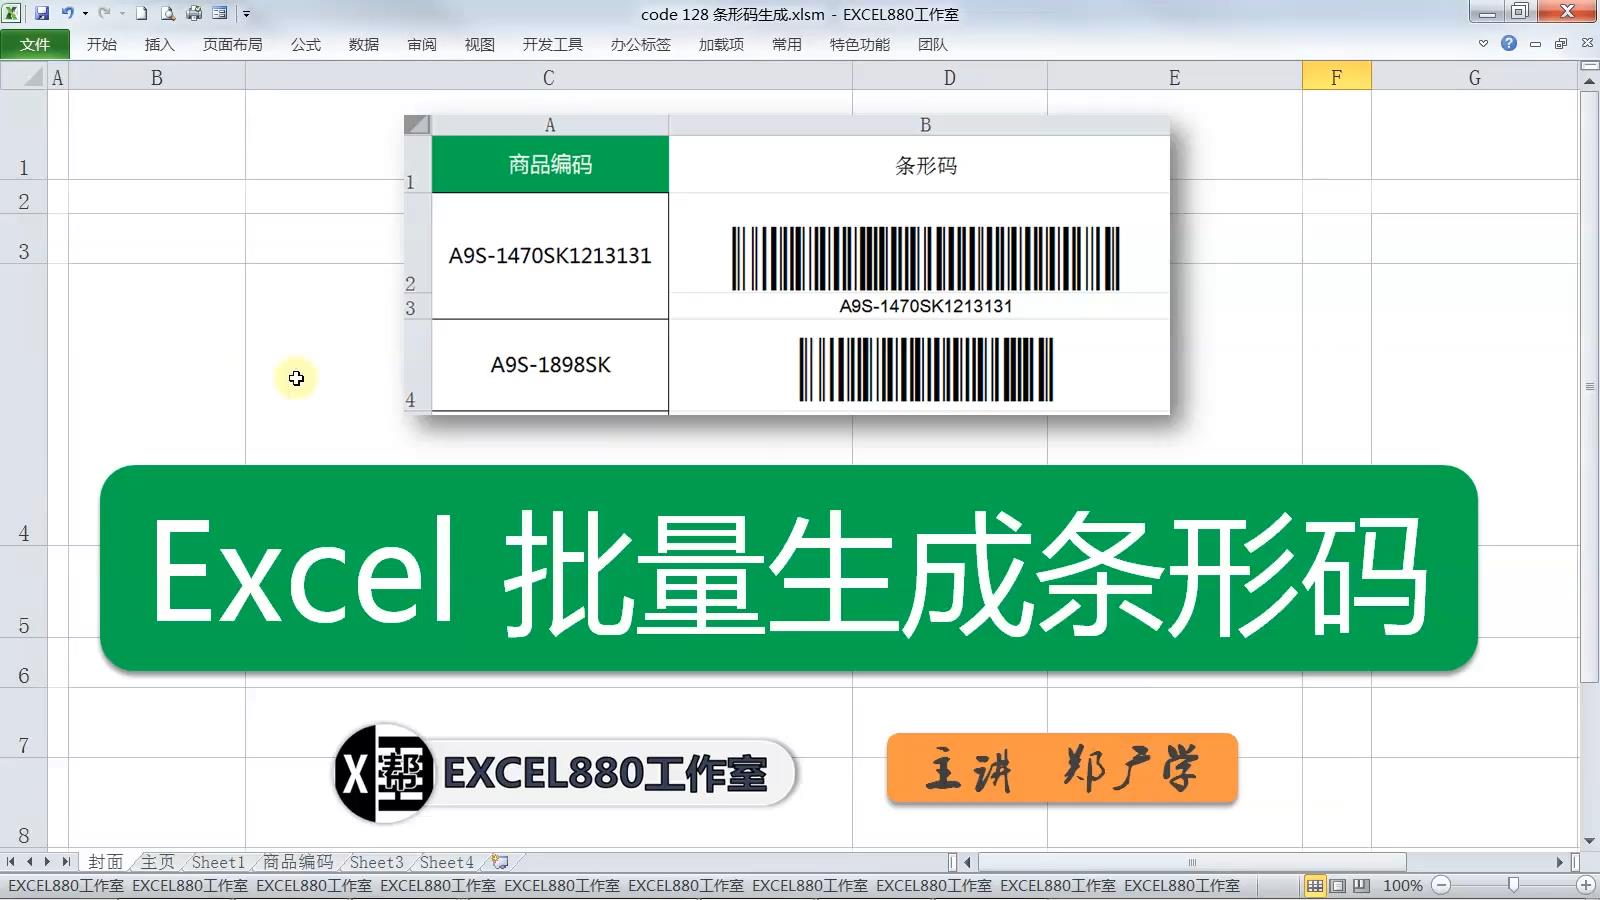 Excel VBA实例007 批量快速生成条形码 代码+条形码字体实现【VIP视频教程】